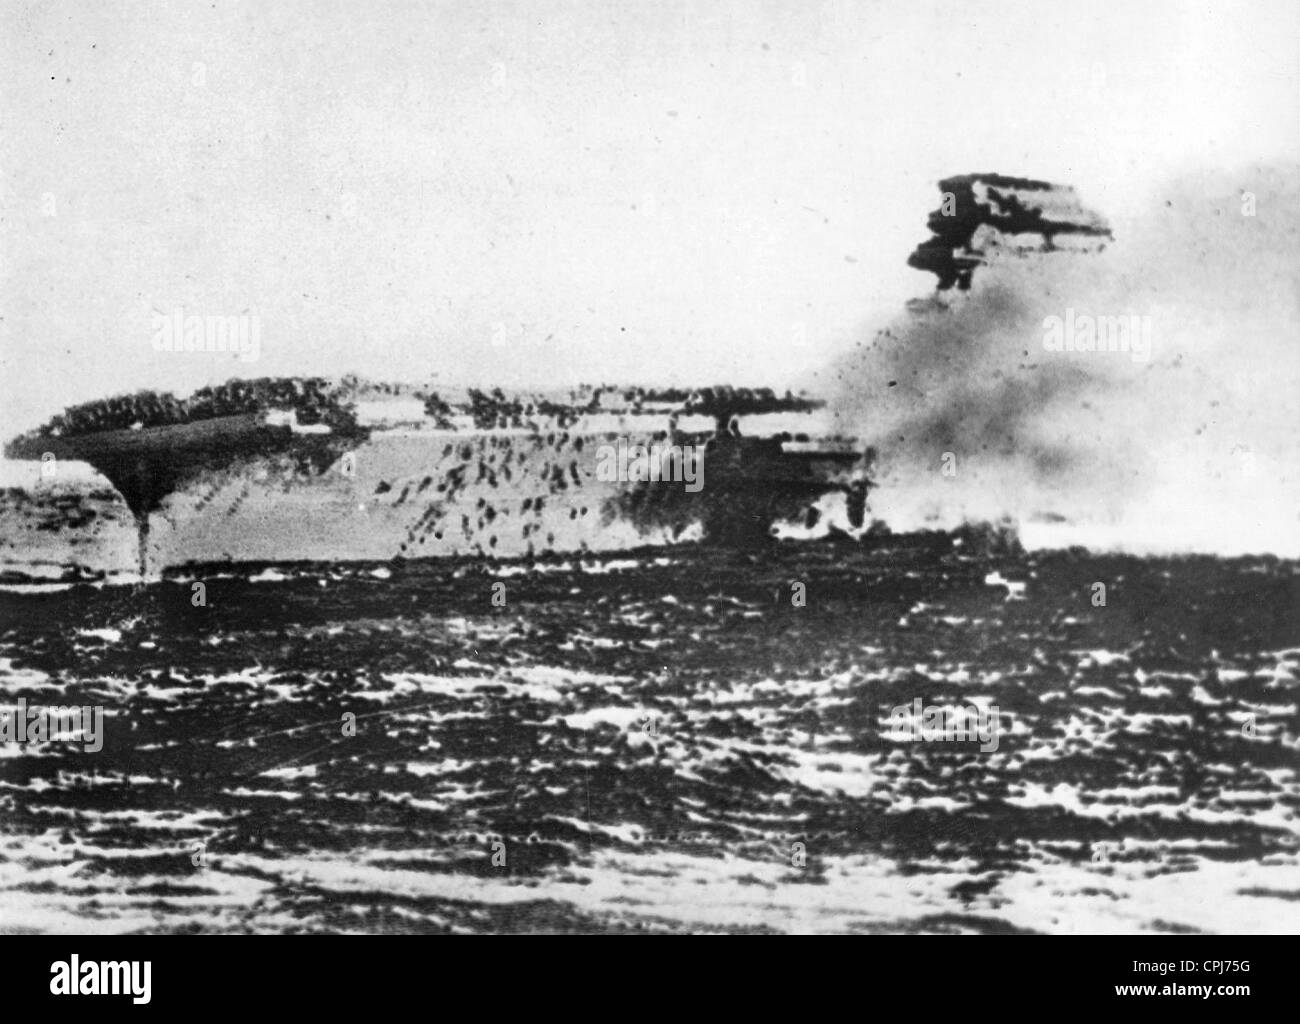 Porte-avions Lexington à la bataille de la mer de Corail, 1942 (photo n/b) Banque D'Images